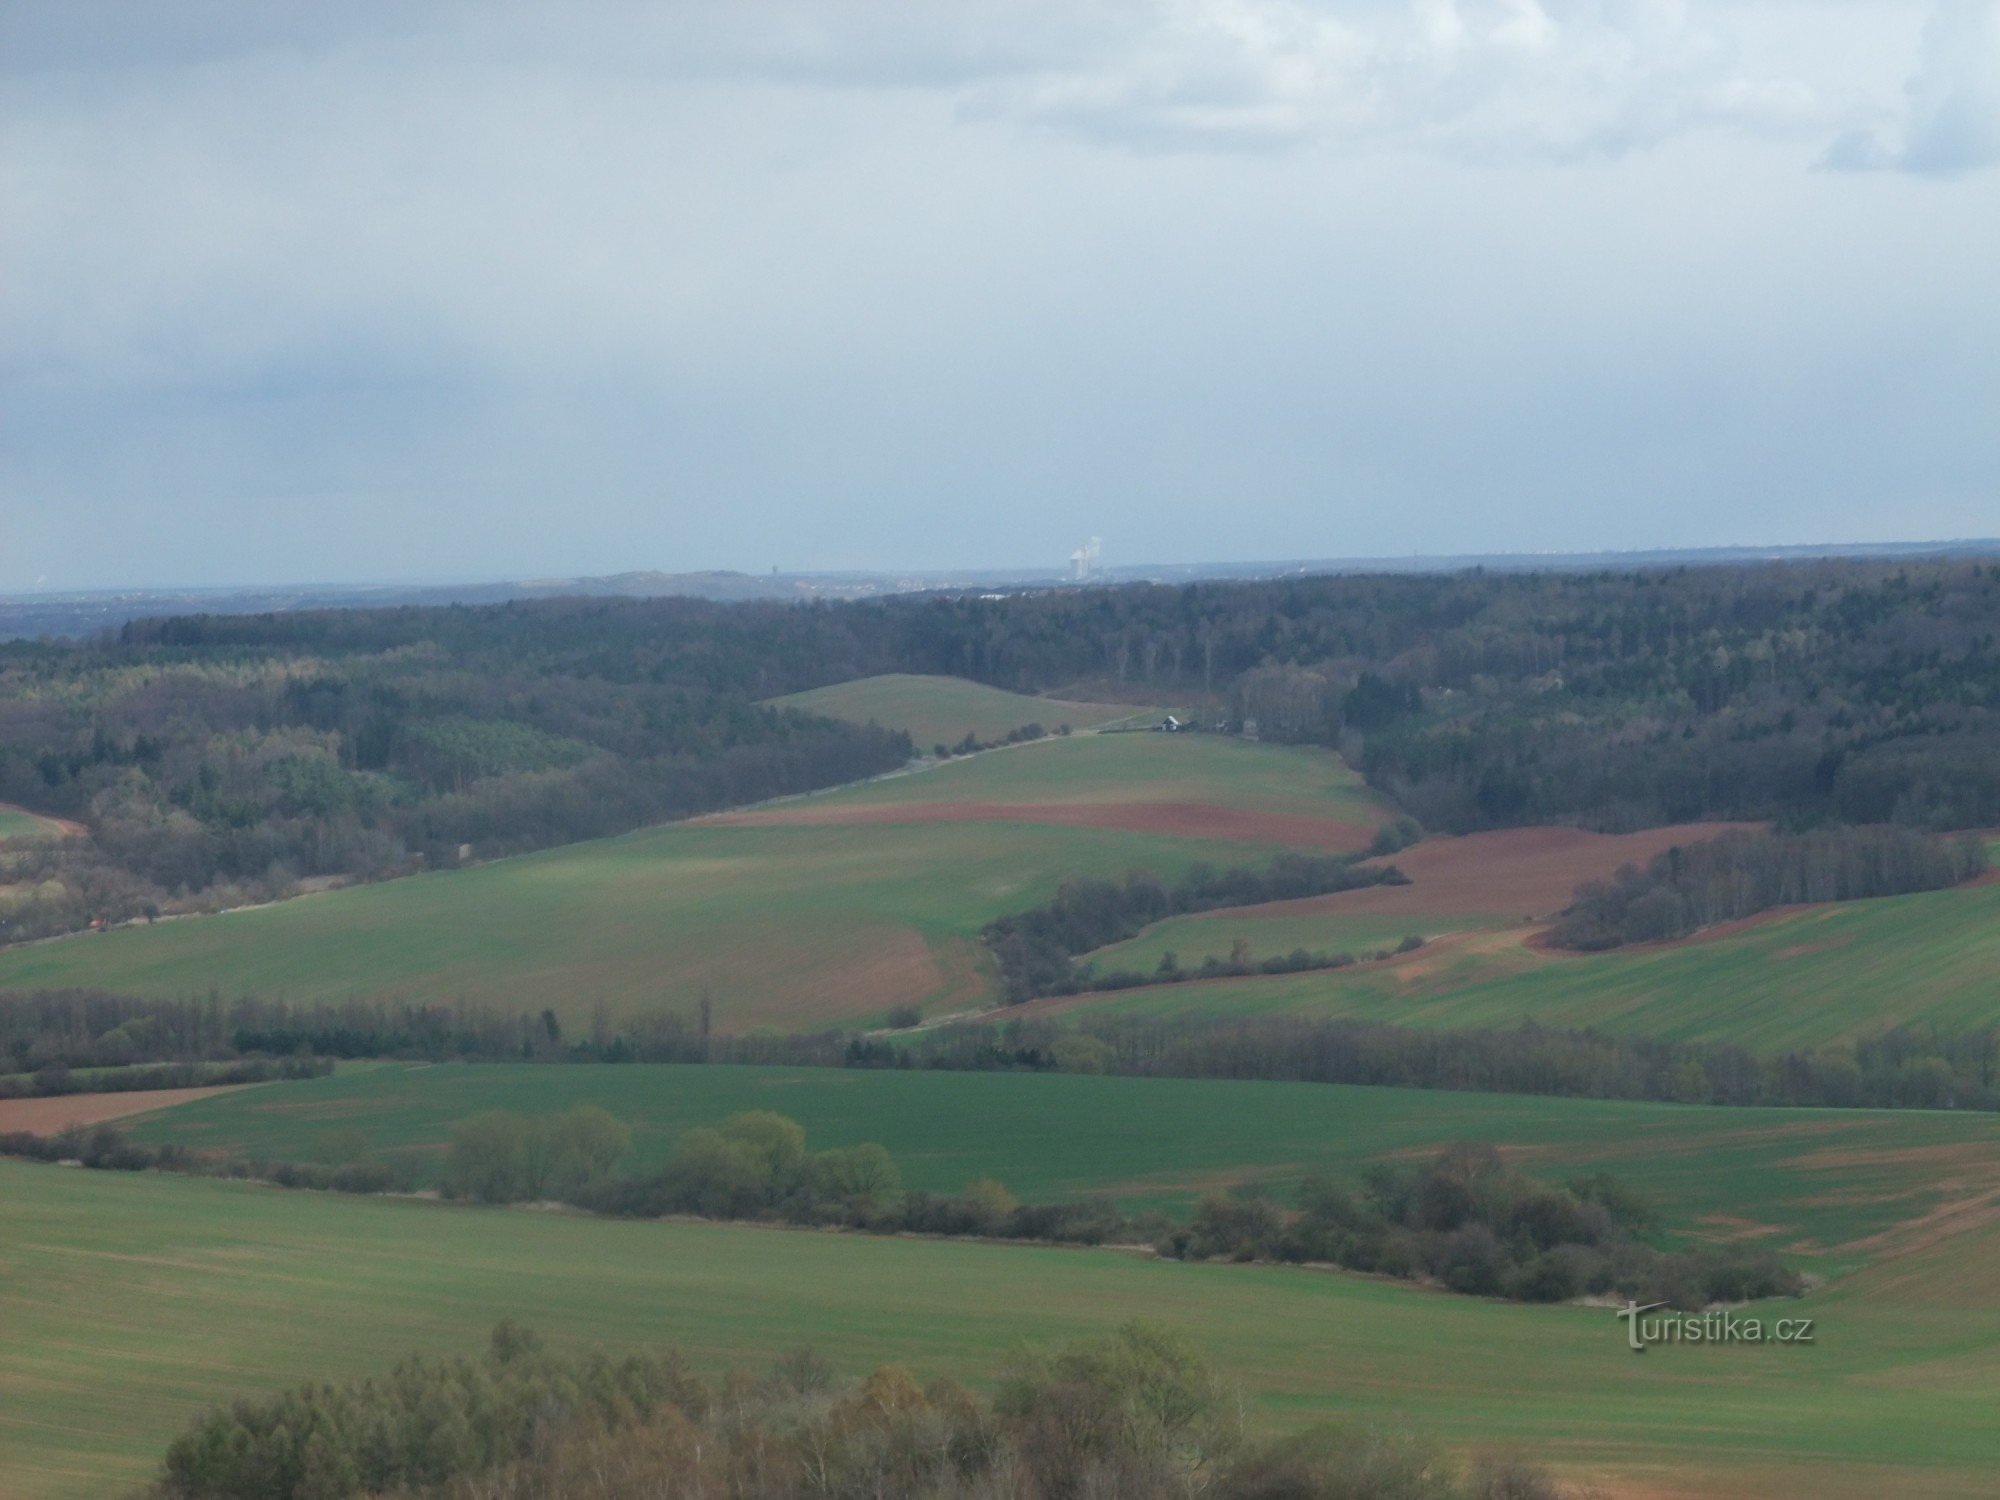 Udsigt fra Líský-udsigtstårnet i sydlig retning